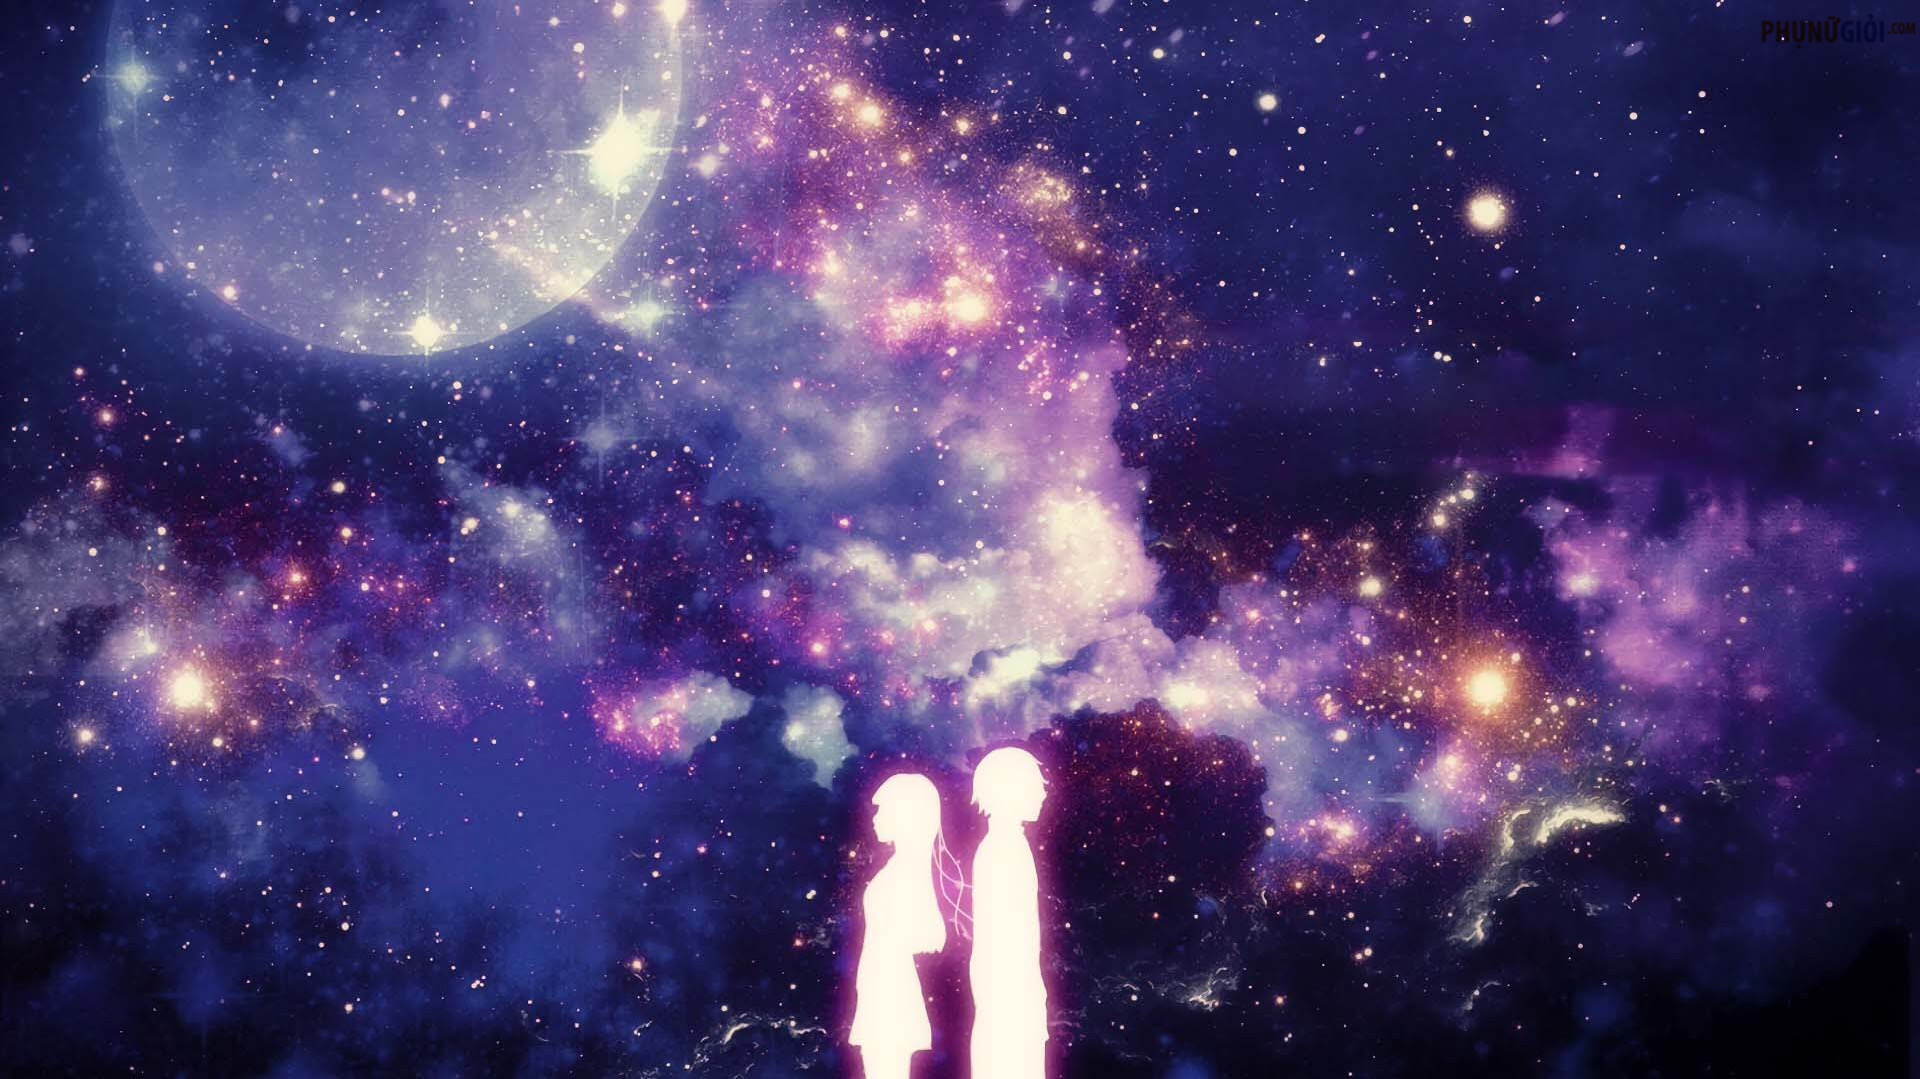 Bạn đang tìm kiếm những bức ảnh Galaxy Anime đẹp như mơ? Hãy ghé thăm ngay album 999+ Hình Ảnh Galaxy Anime Đẹp, [HIẾM CÓ KHÓ TÌM]. Từ ánh sao lung linh đến những hình ảnh chiêm ngưỡng các hành tinh khác nhau, tất cả sẽ được cập nhật đầy đủ tại đây.